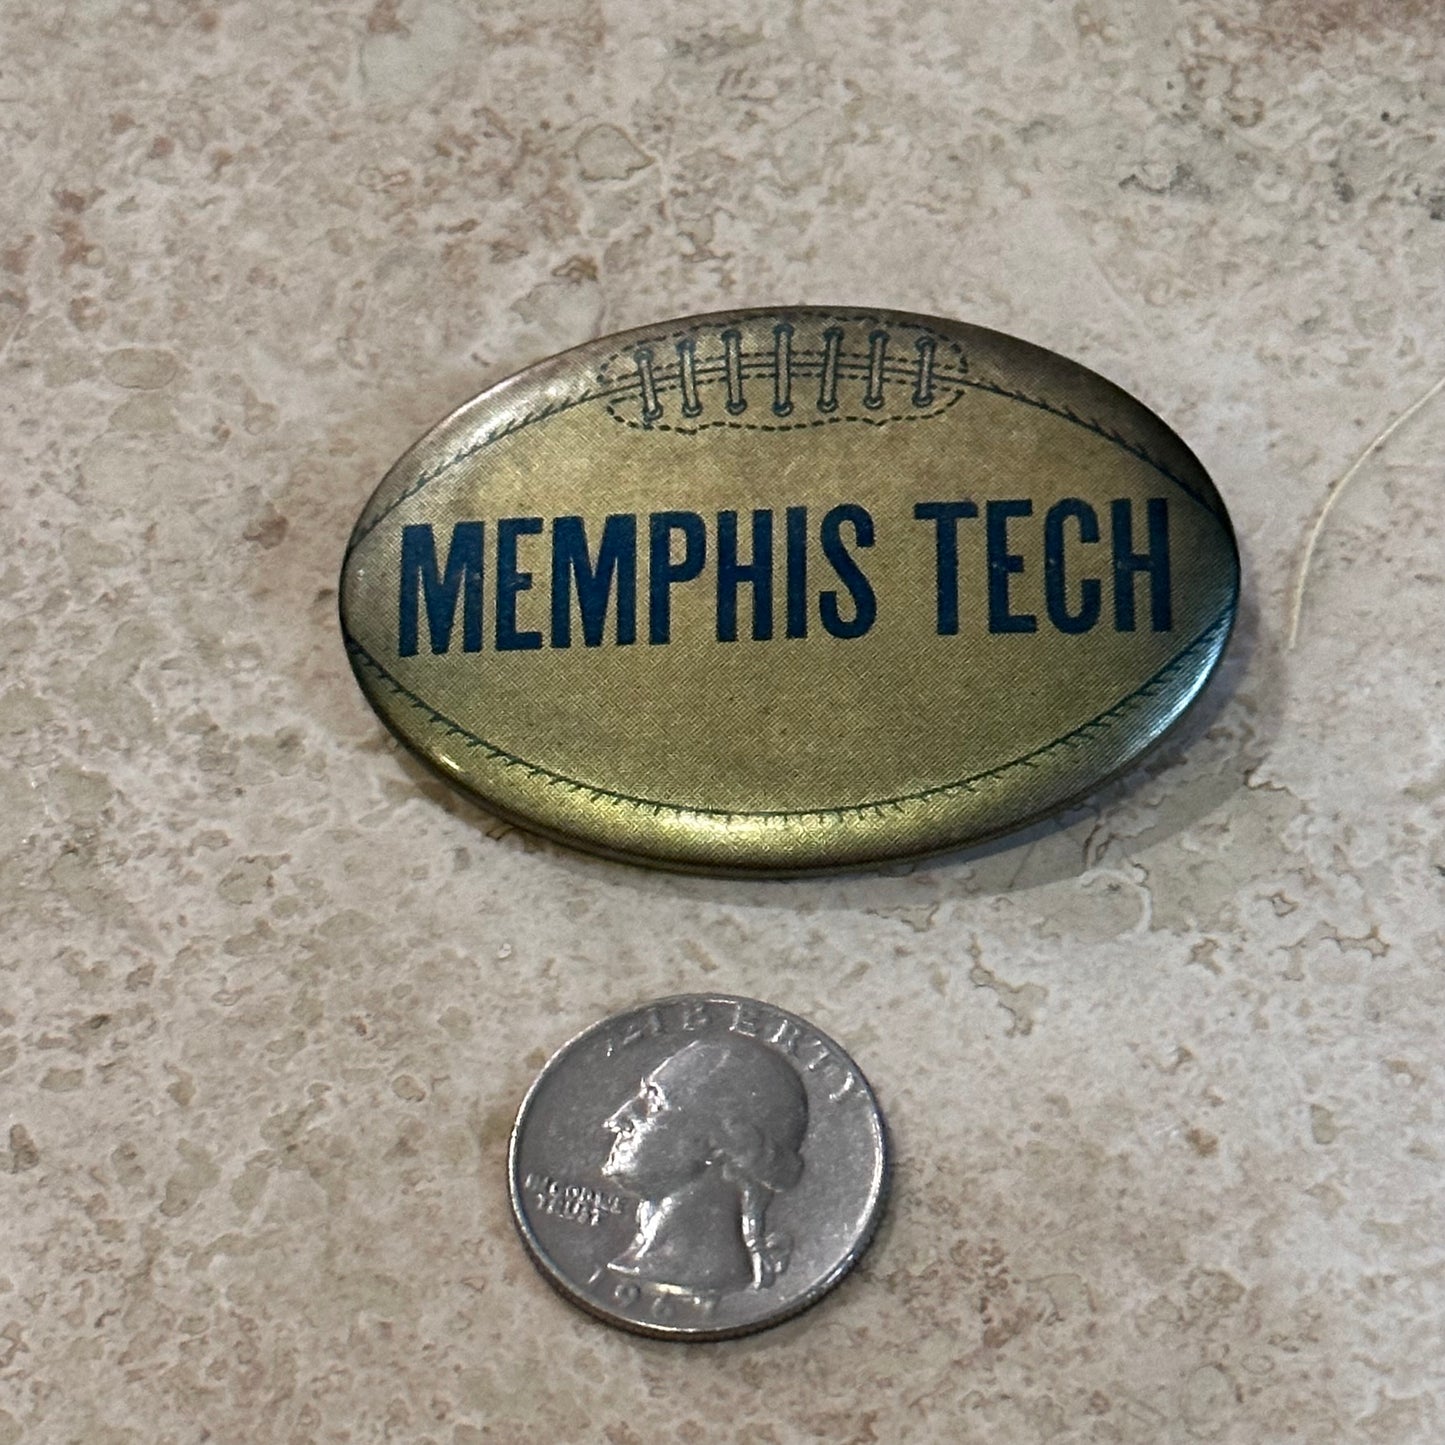 1950s Memphis Tech Football Oval Pinback Button, 2.5”x1.75”